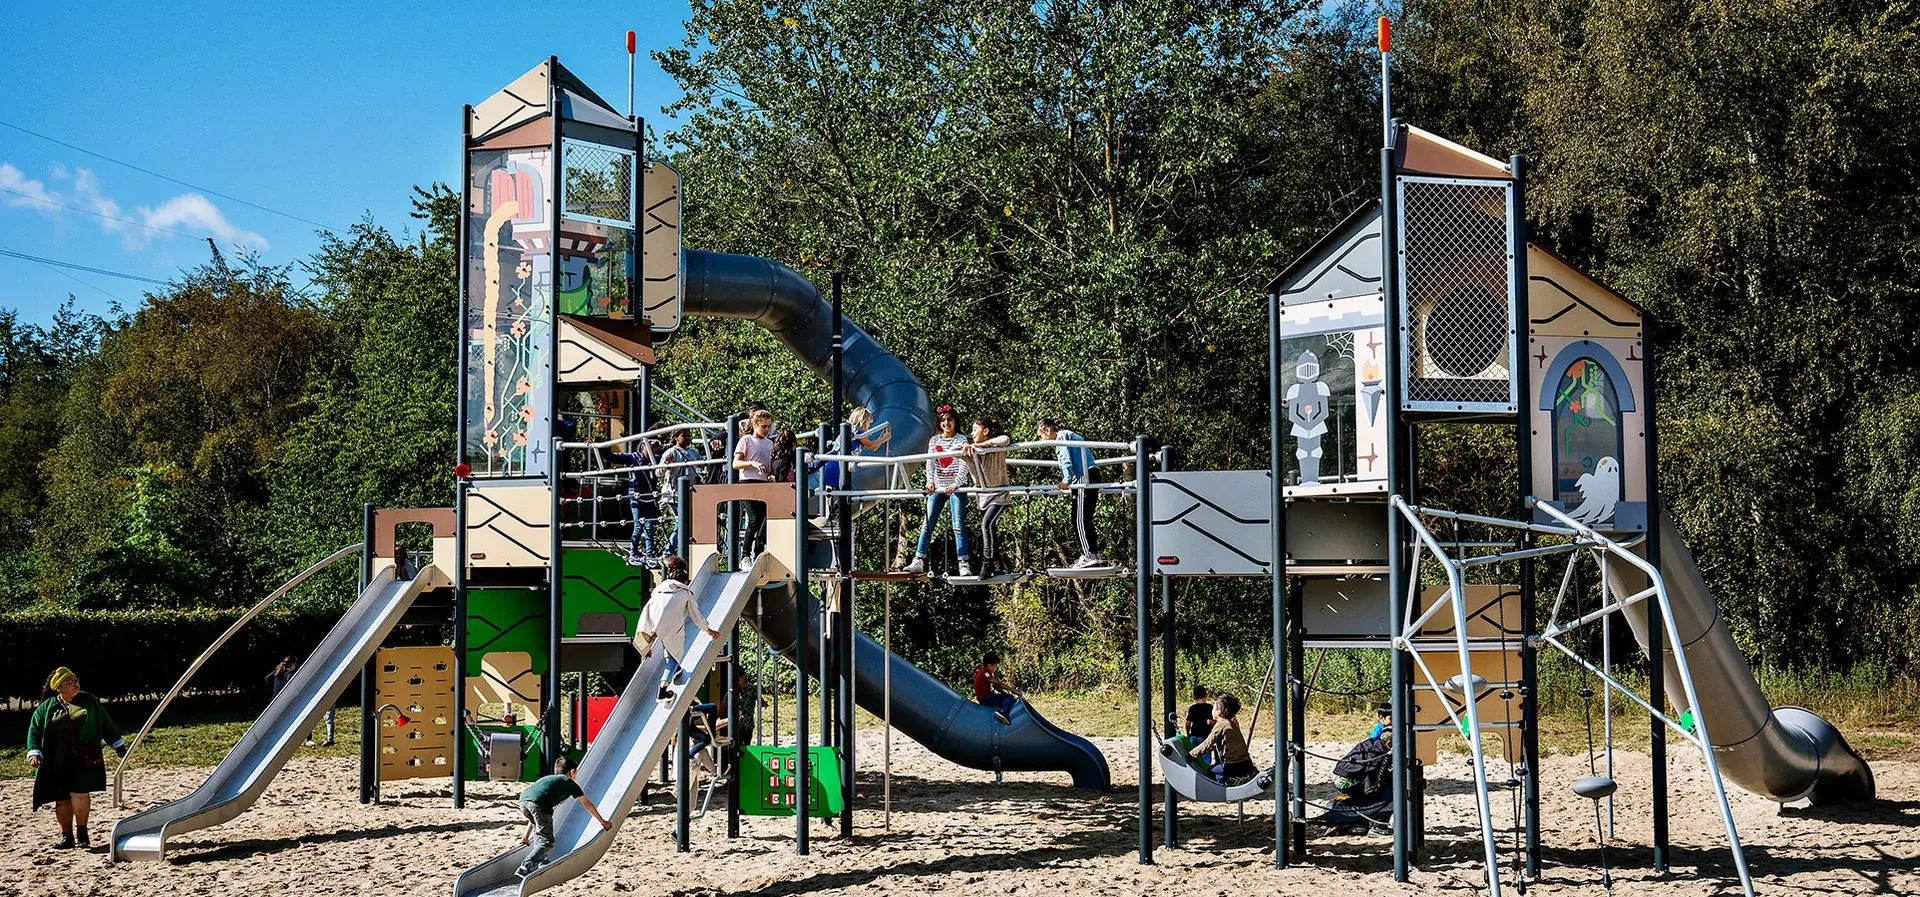 Riesiges Spielplatzsystem in einem Park mit Schulkindern, die spielen